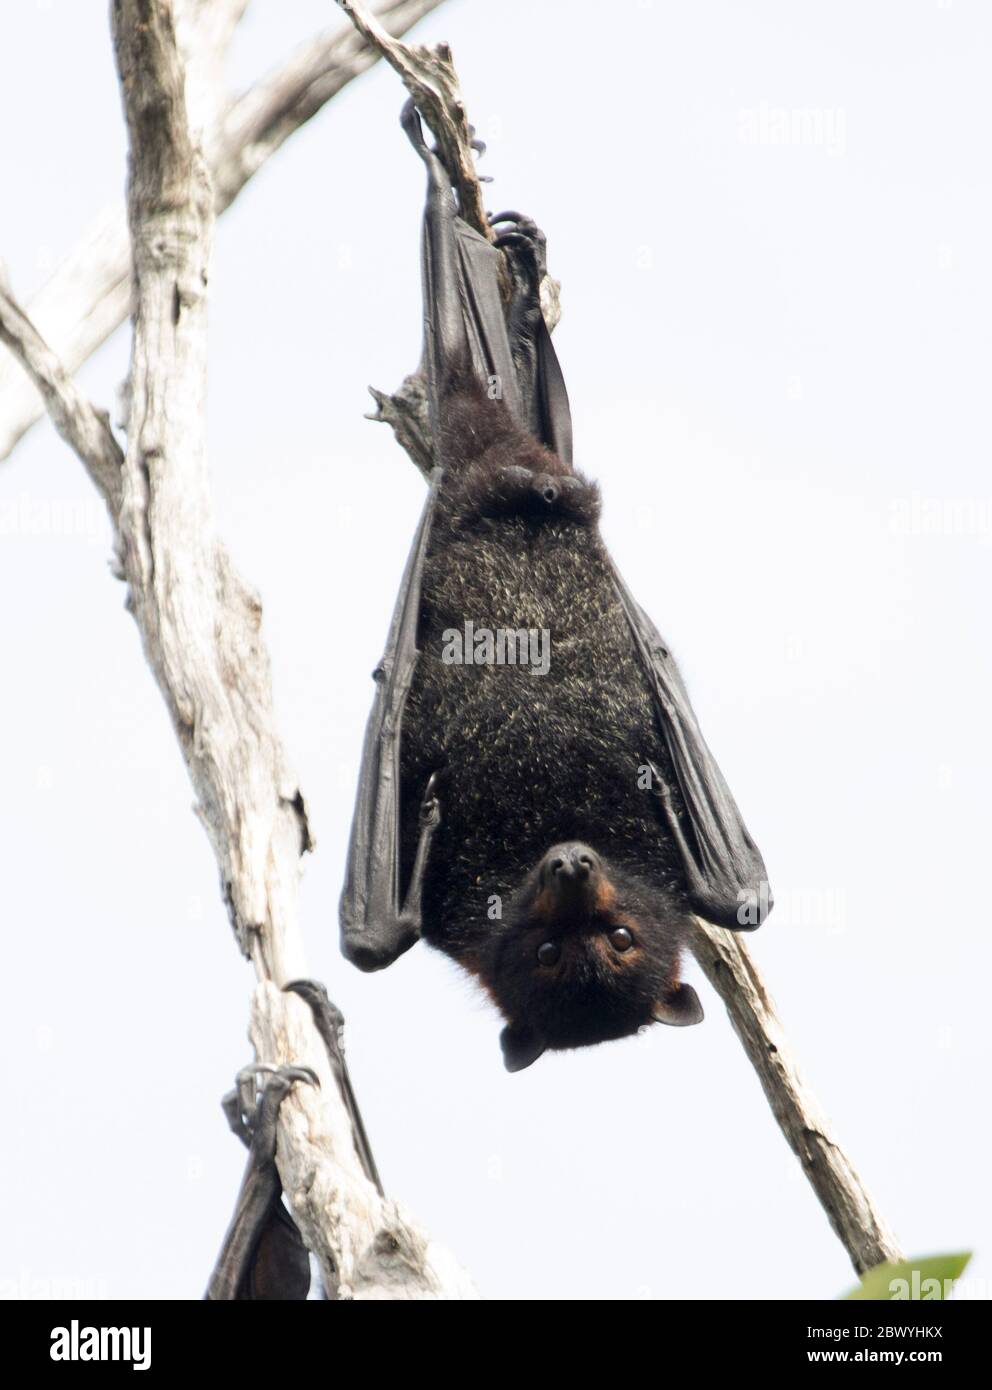 Zorro australiano de cabeza gris / murciélago de la fruta, Pteropus poliocephalus, colgando de la rama del árbol y contra el fondo del cielo claro Foto de stock